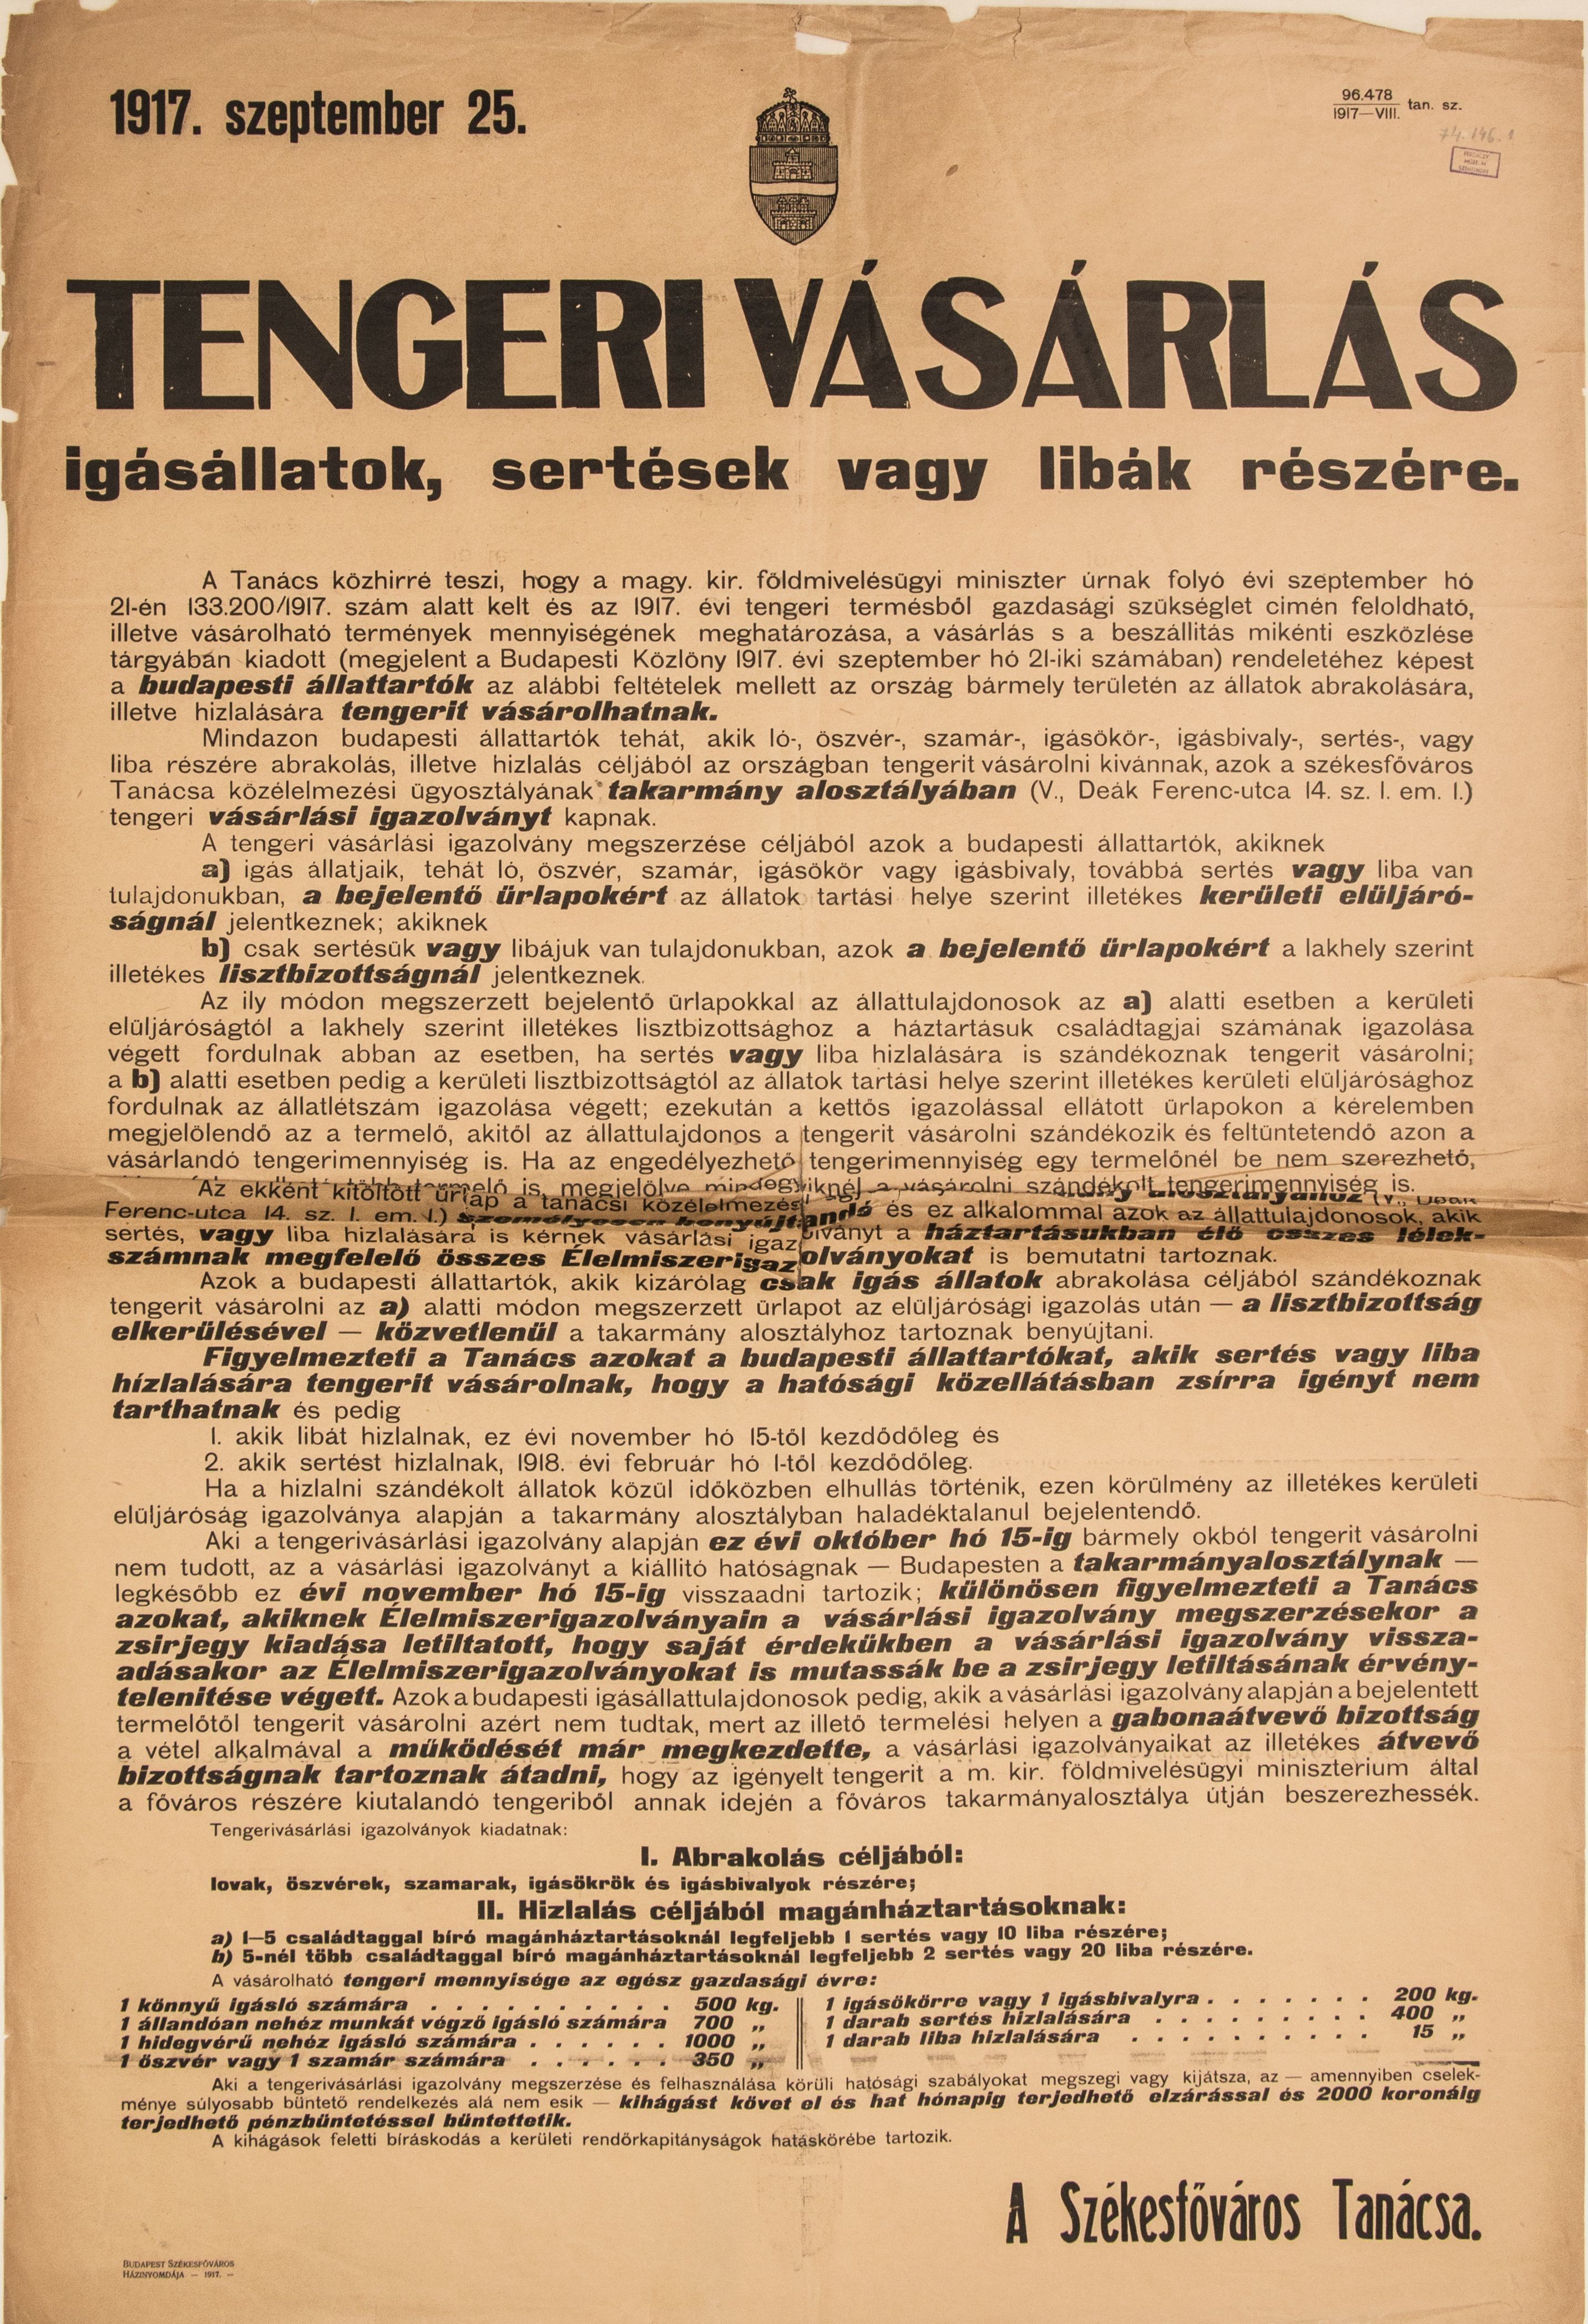 Tengeri vásárlás, 1917.09.25. (Ferenczy Múzeumi Centrum CC BY-NC-SA)